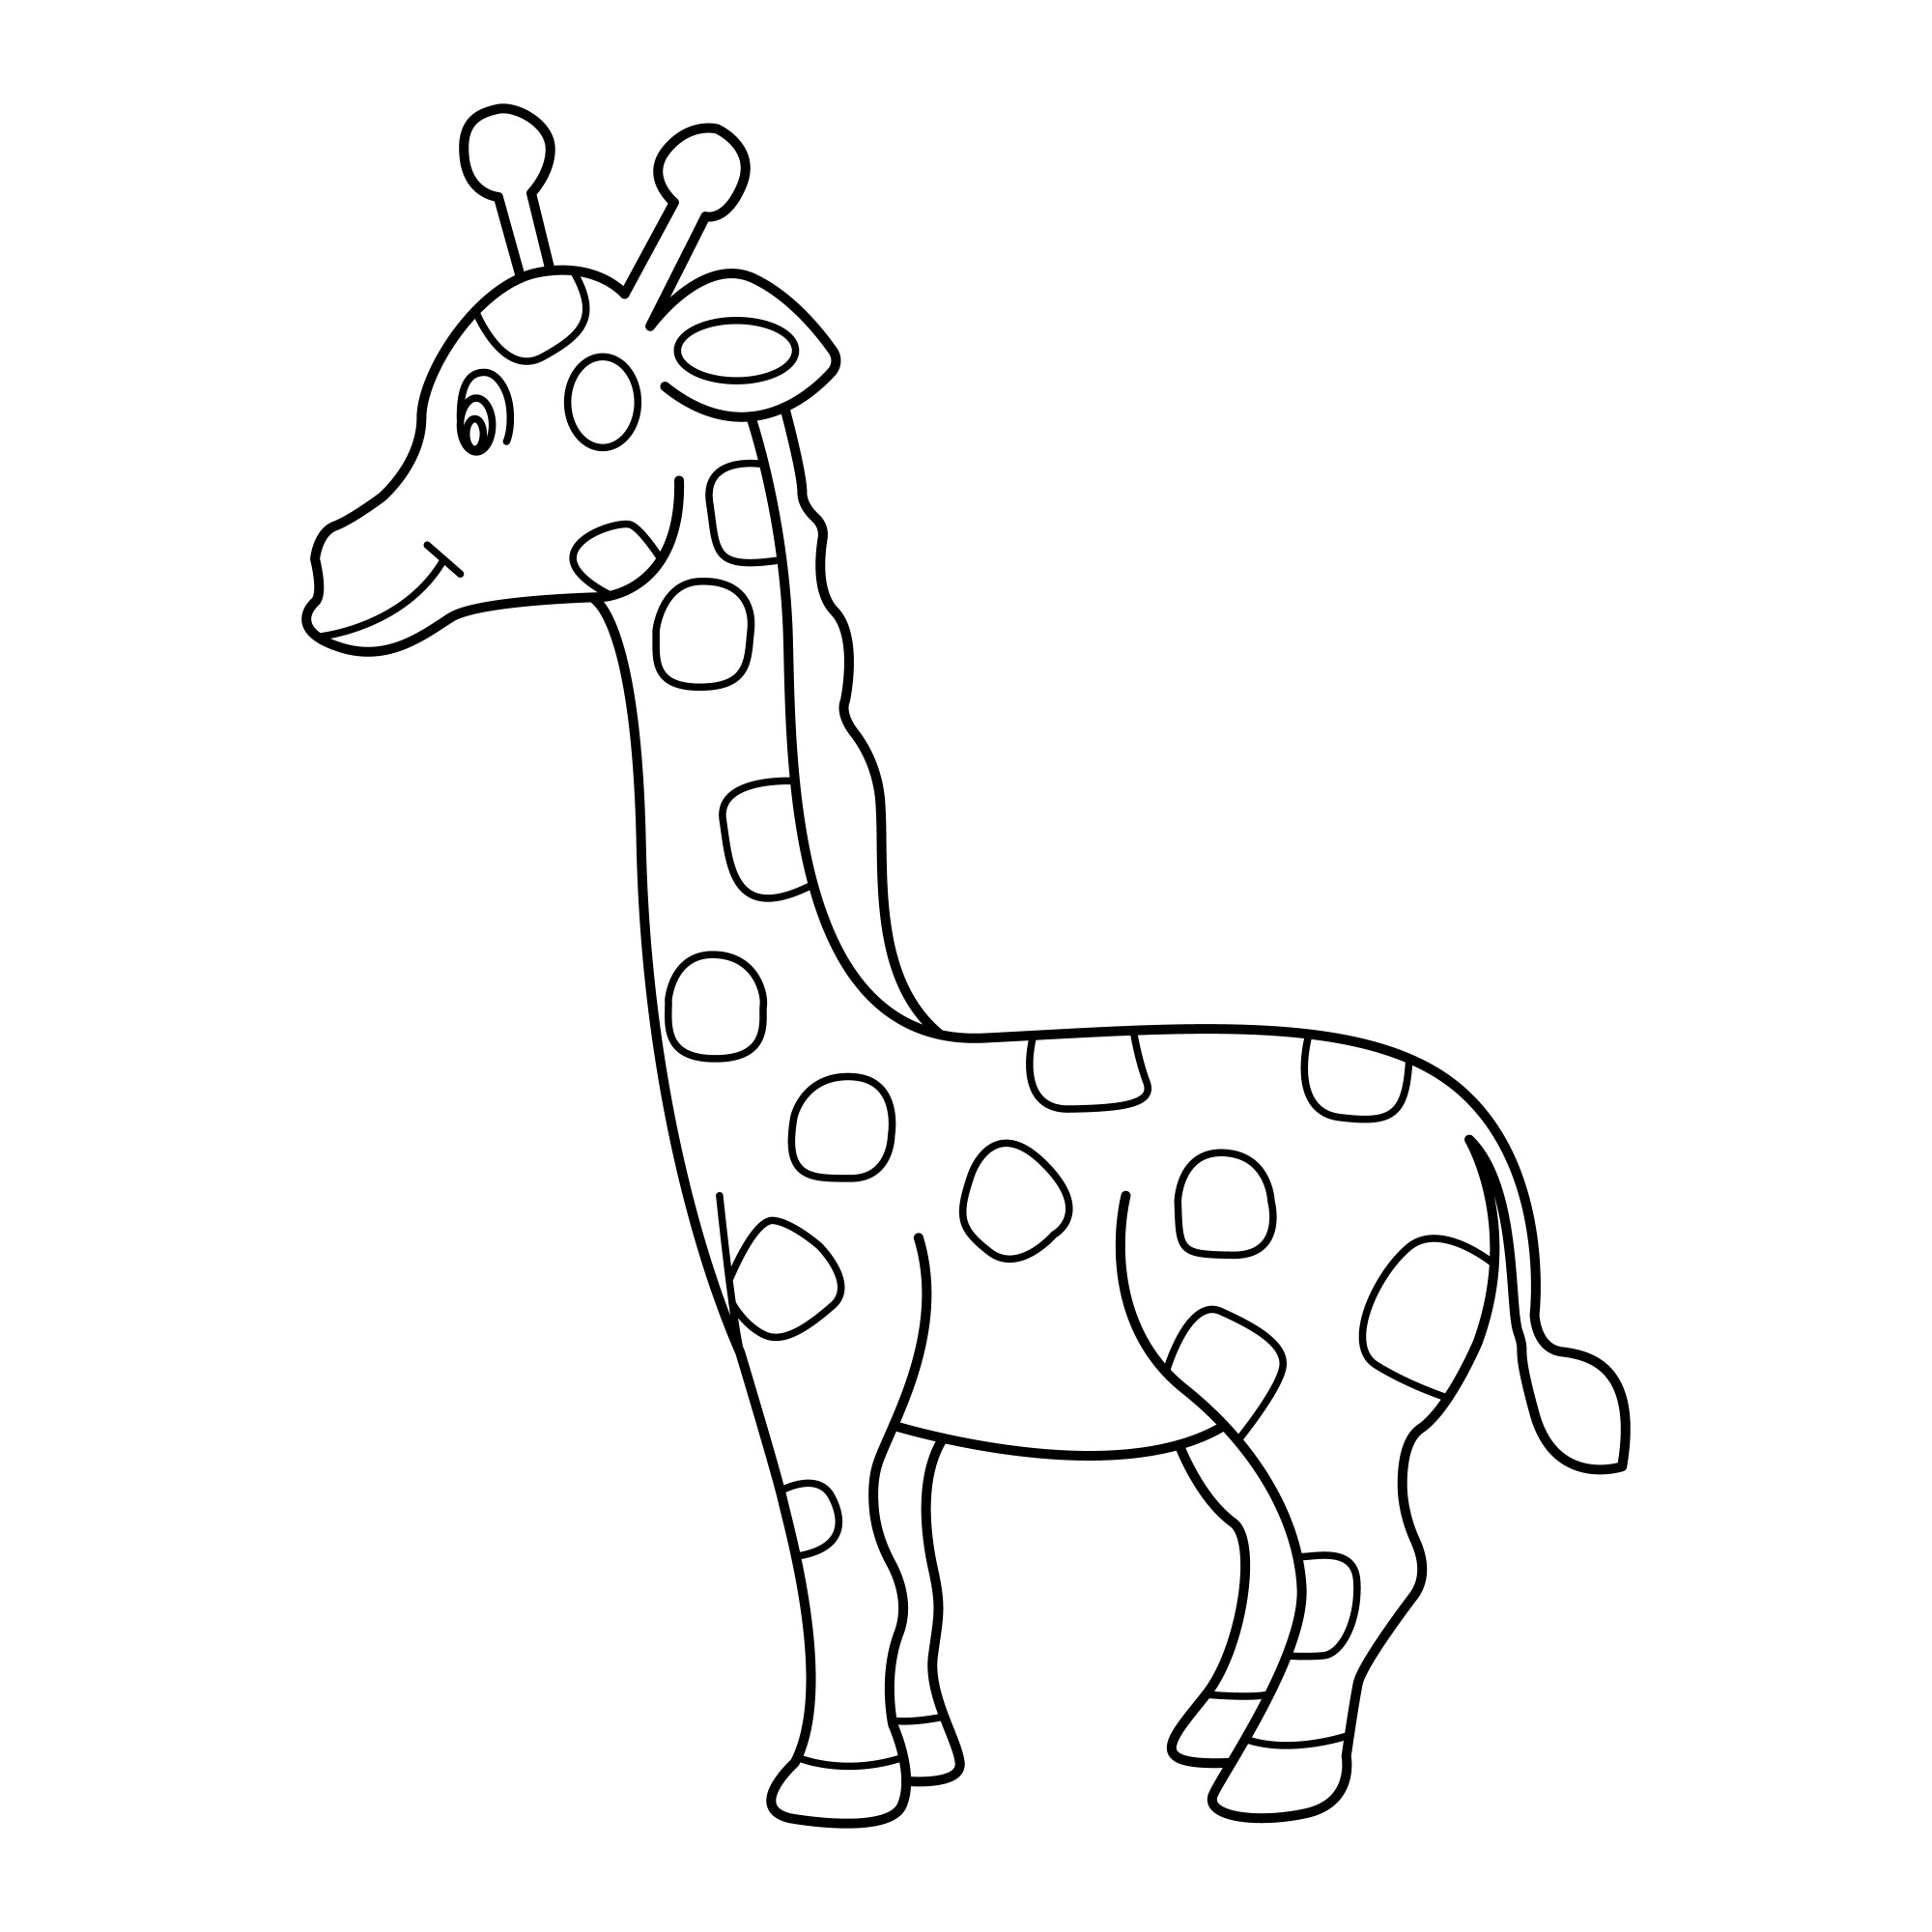 Раскраска для детей: ребенок жираф